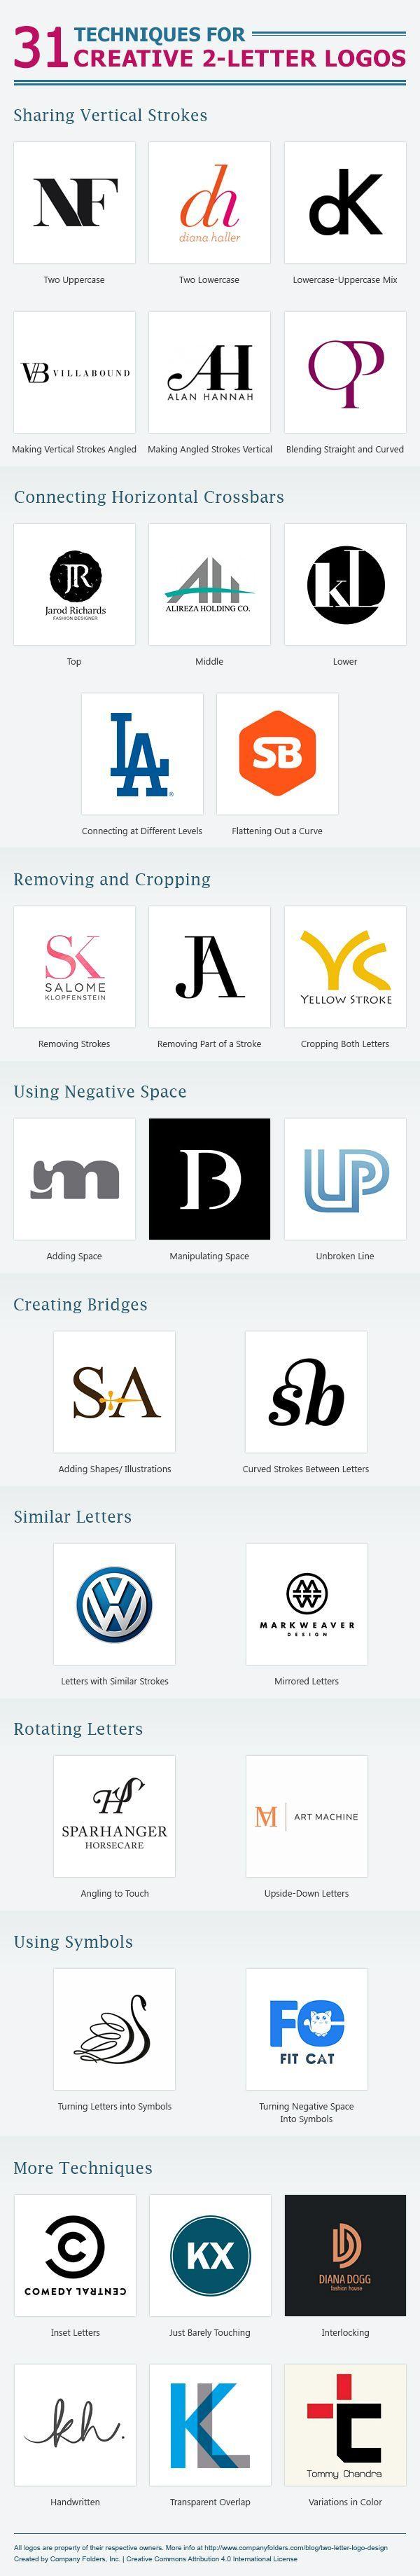 Um Logo - Técnicas para criar um logo com apenas duas letras. Designing